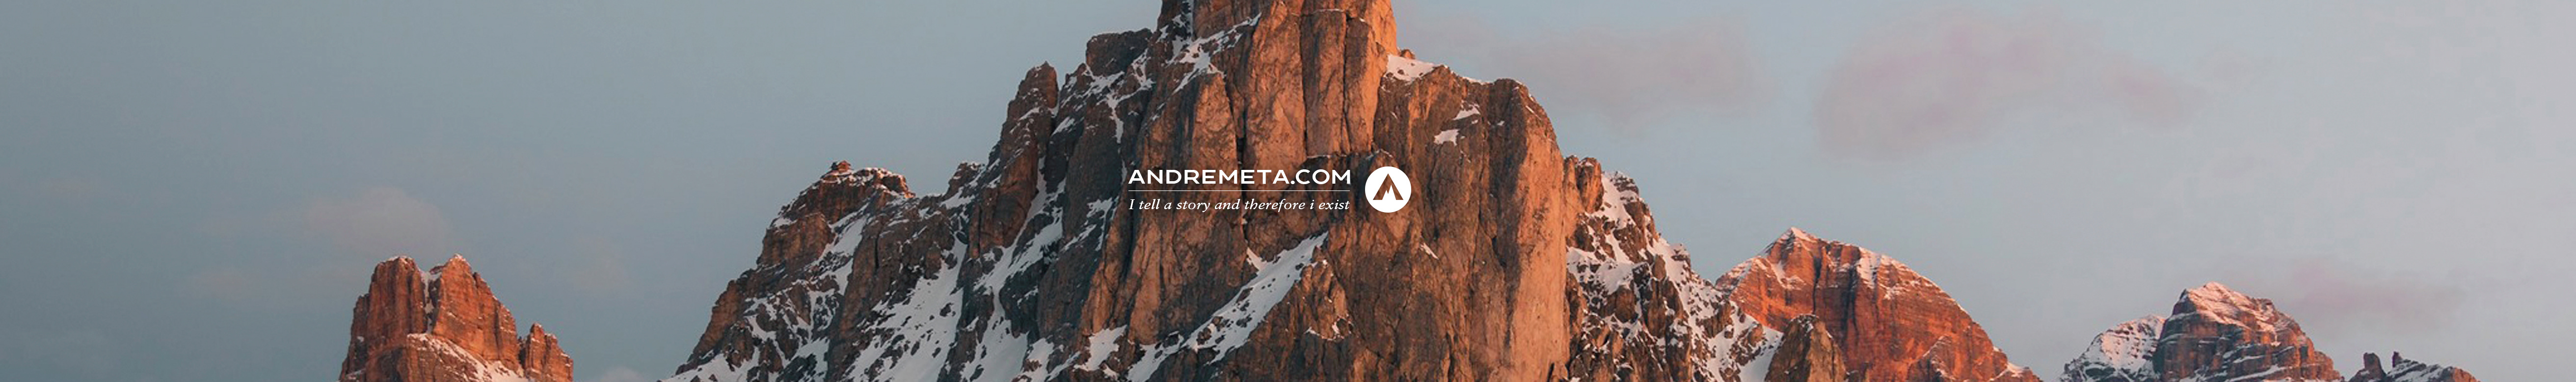 Andrea Metafuni's profile banner